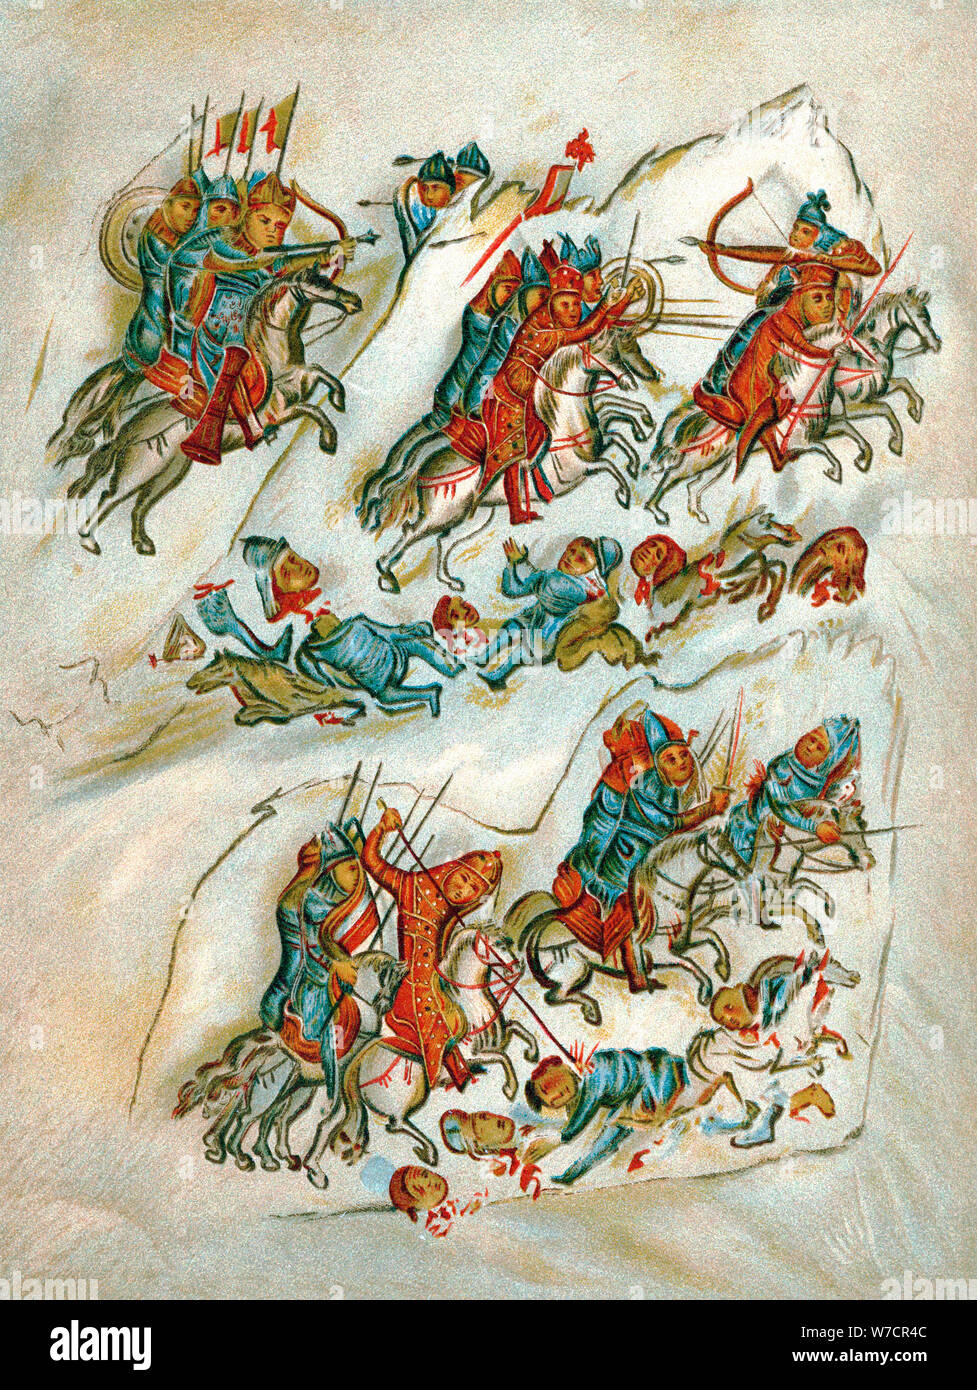 Routage russes bulgares dans une escarmouche de cavalerie. Artiste : Inconnu Banque D'Images